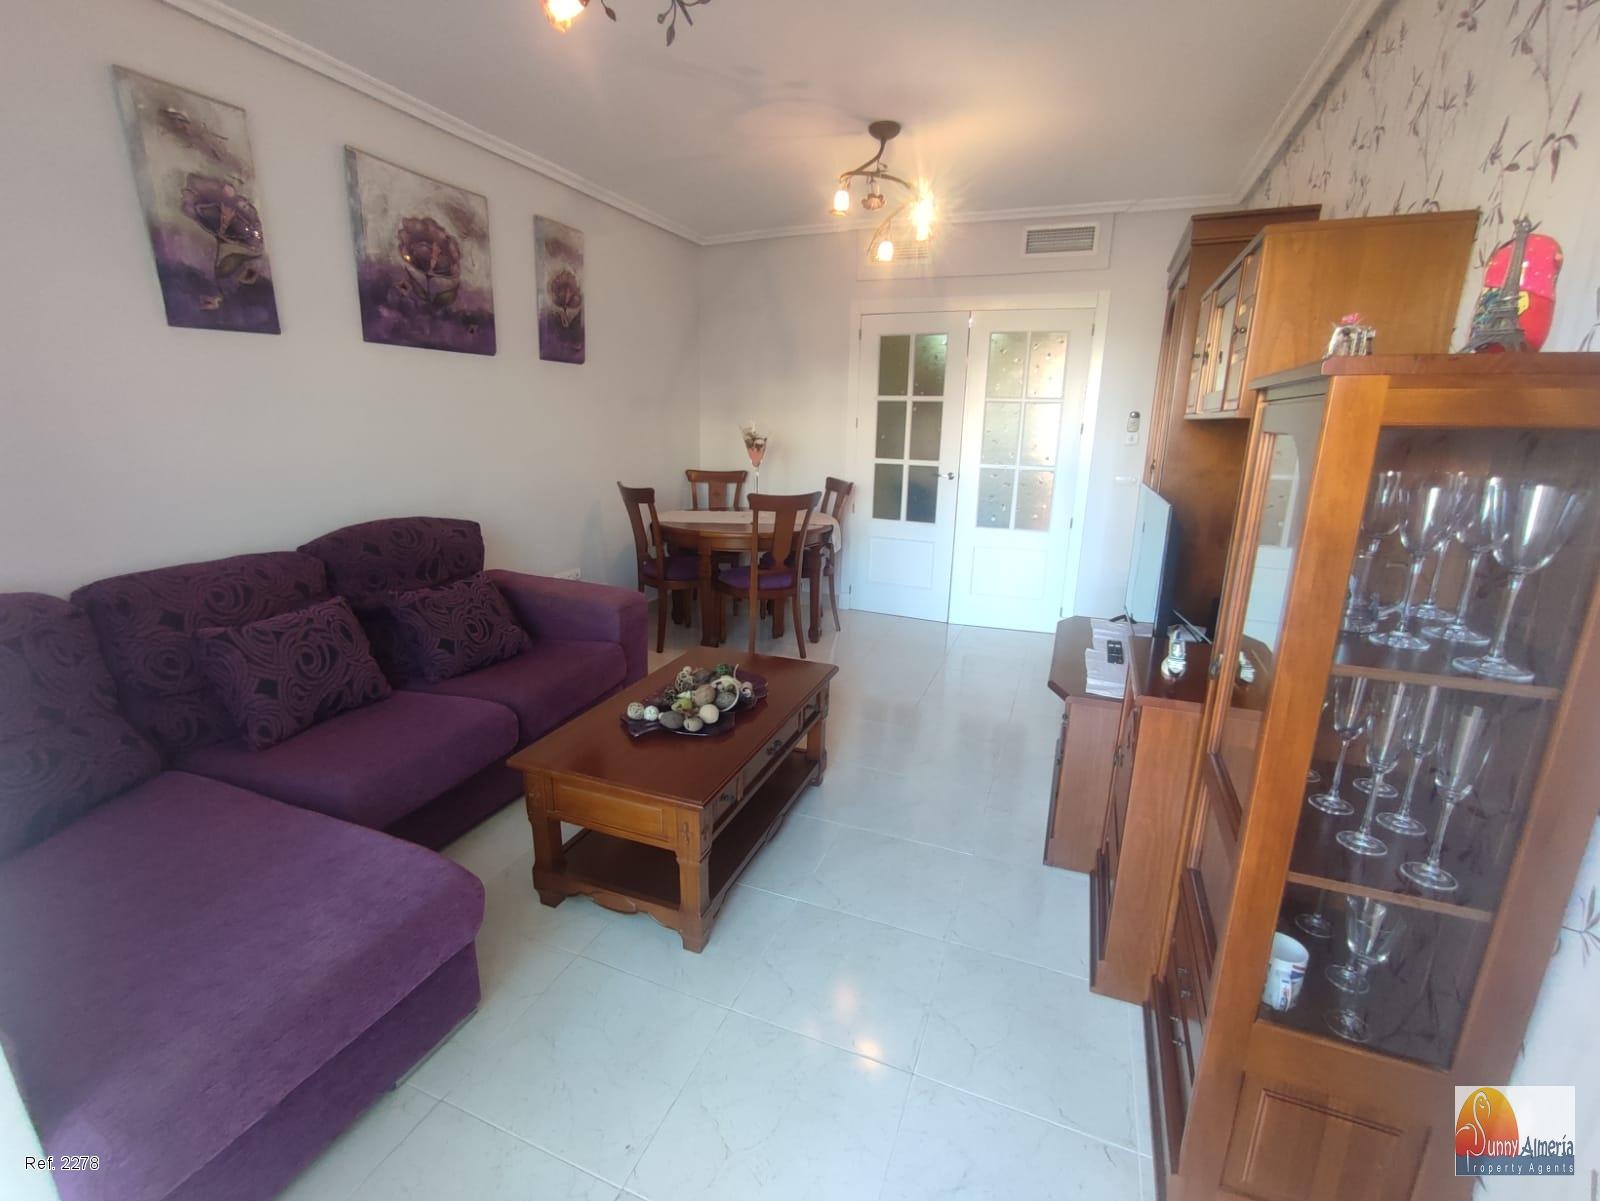 Luxury Apartment for rent in Calle Fosforito 4 (Roquetas de Mar), 950 €/month (Season)